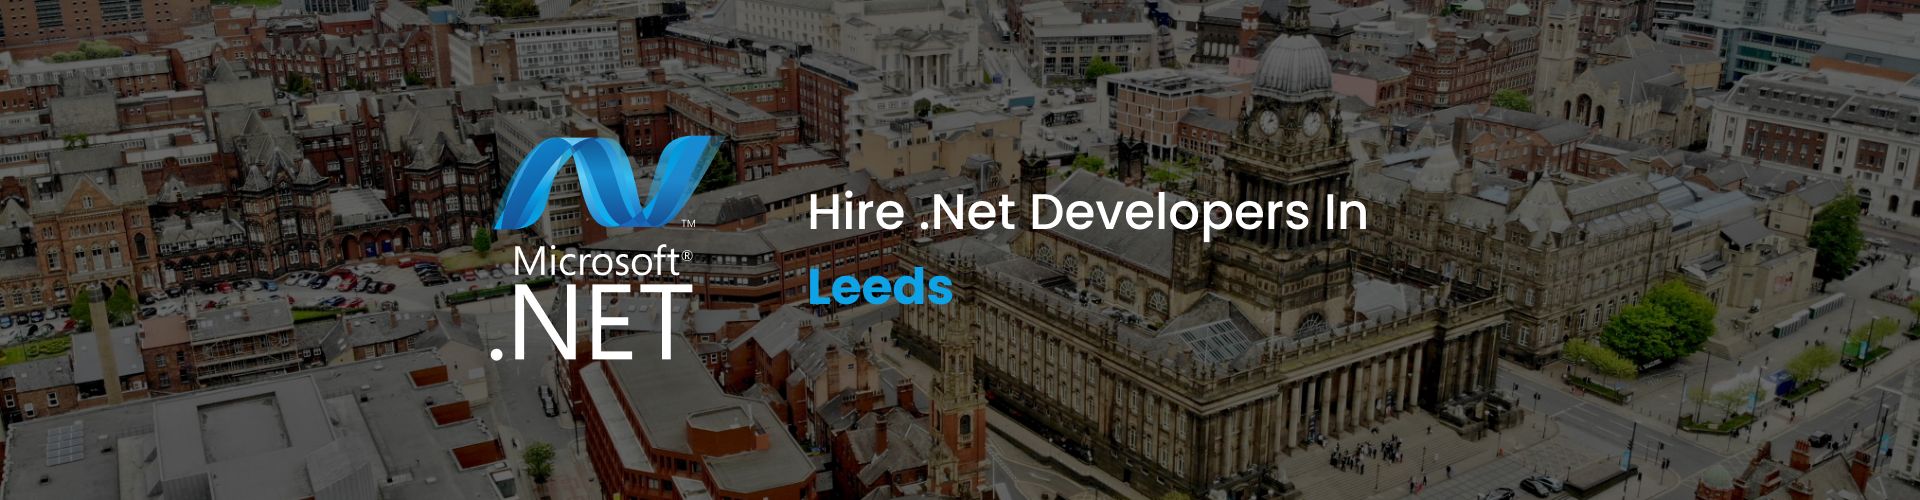 hire dot net developers in leeds